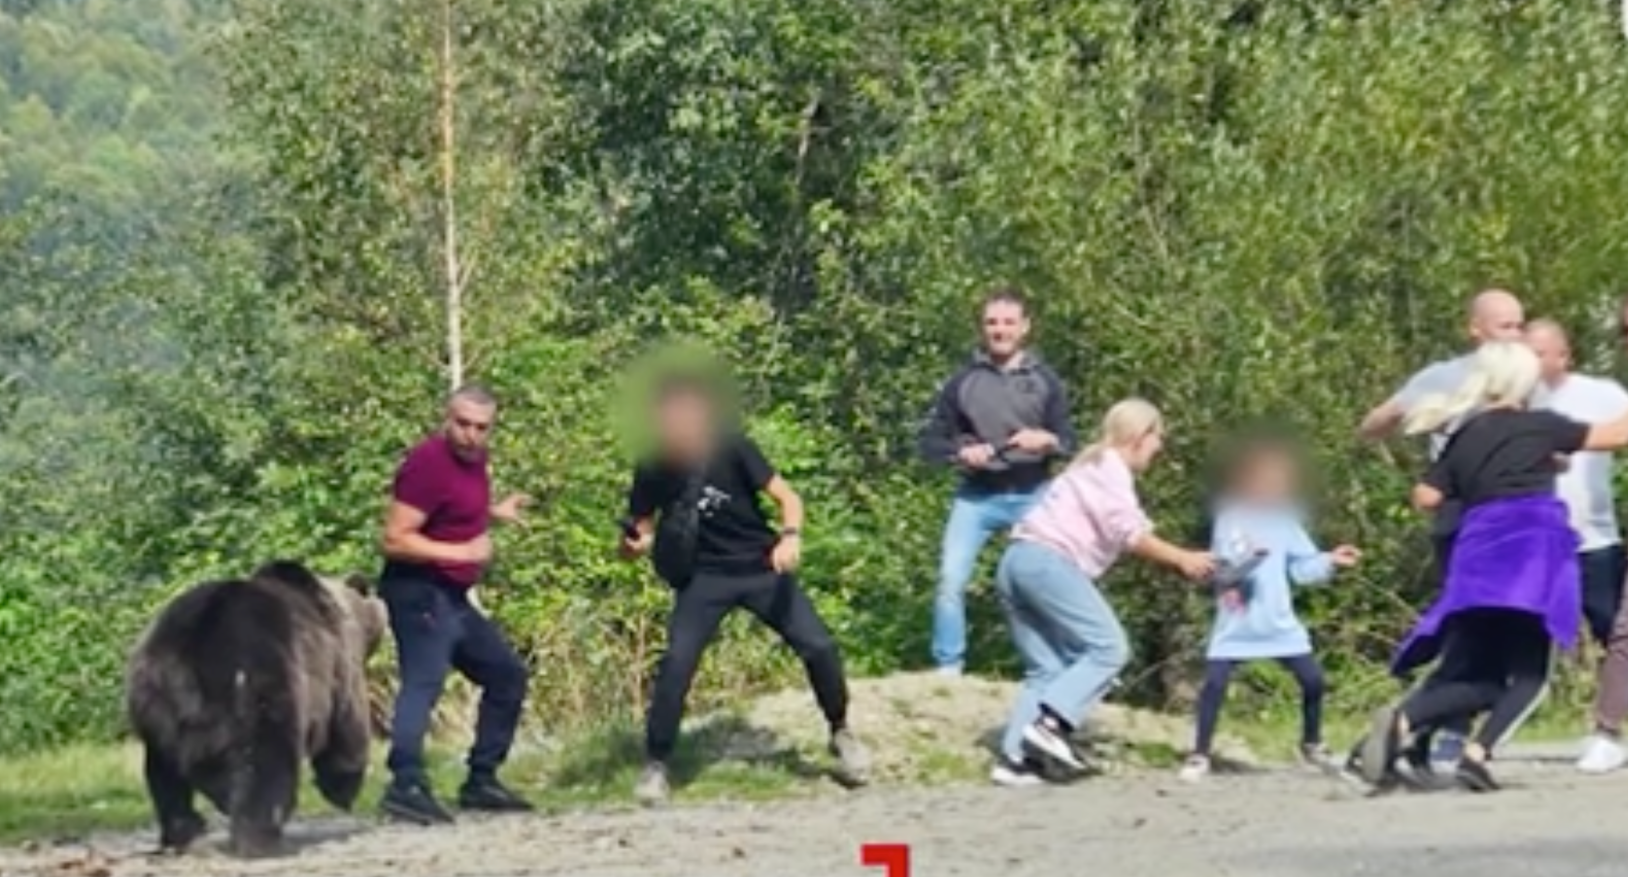 (ФОТО) В Румынии группа туристов пыталась покормить медведя. Он едва не напал на них